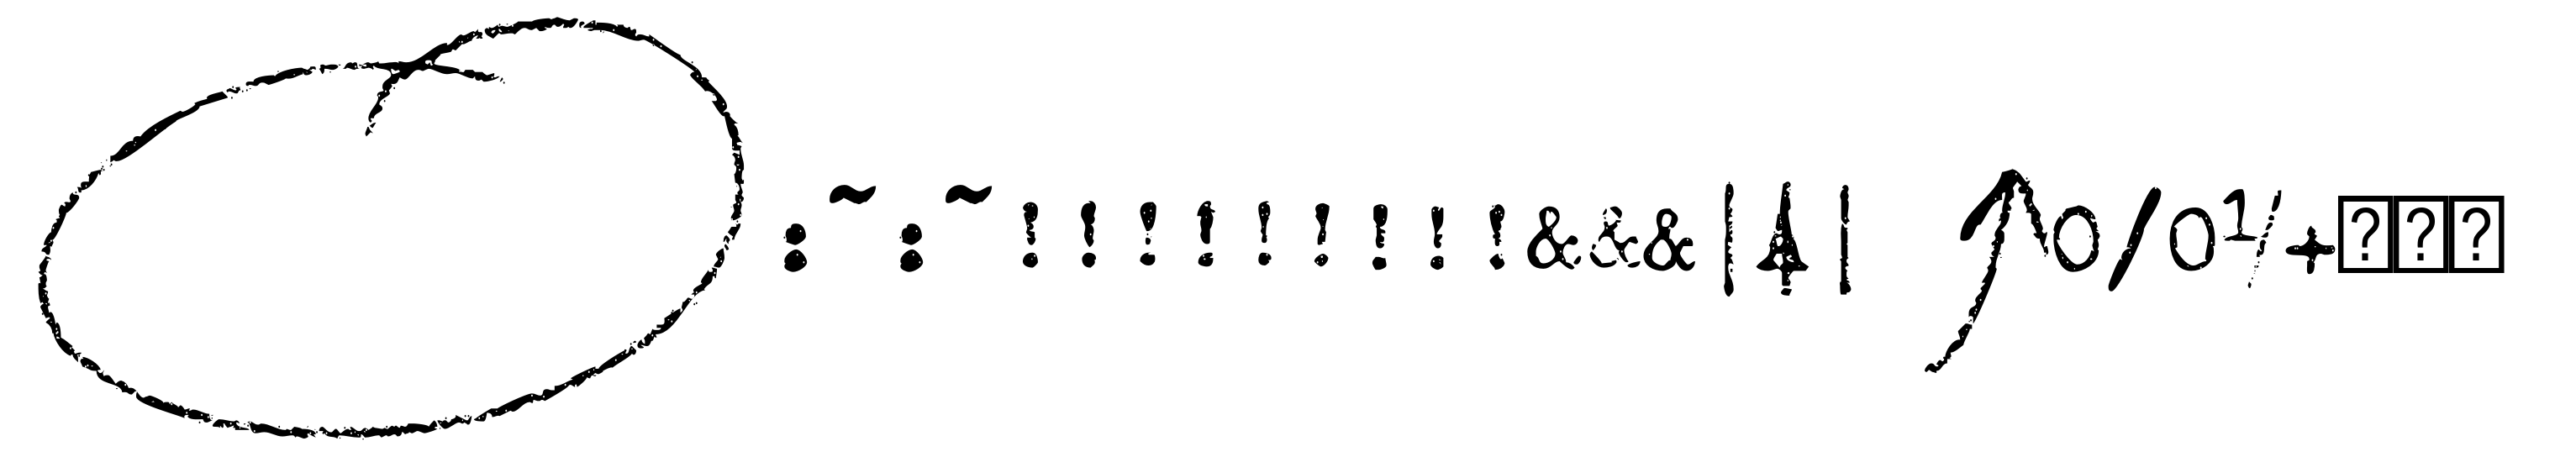 Office Typewriter Misprints SVG